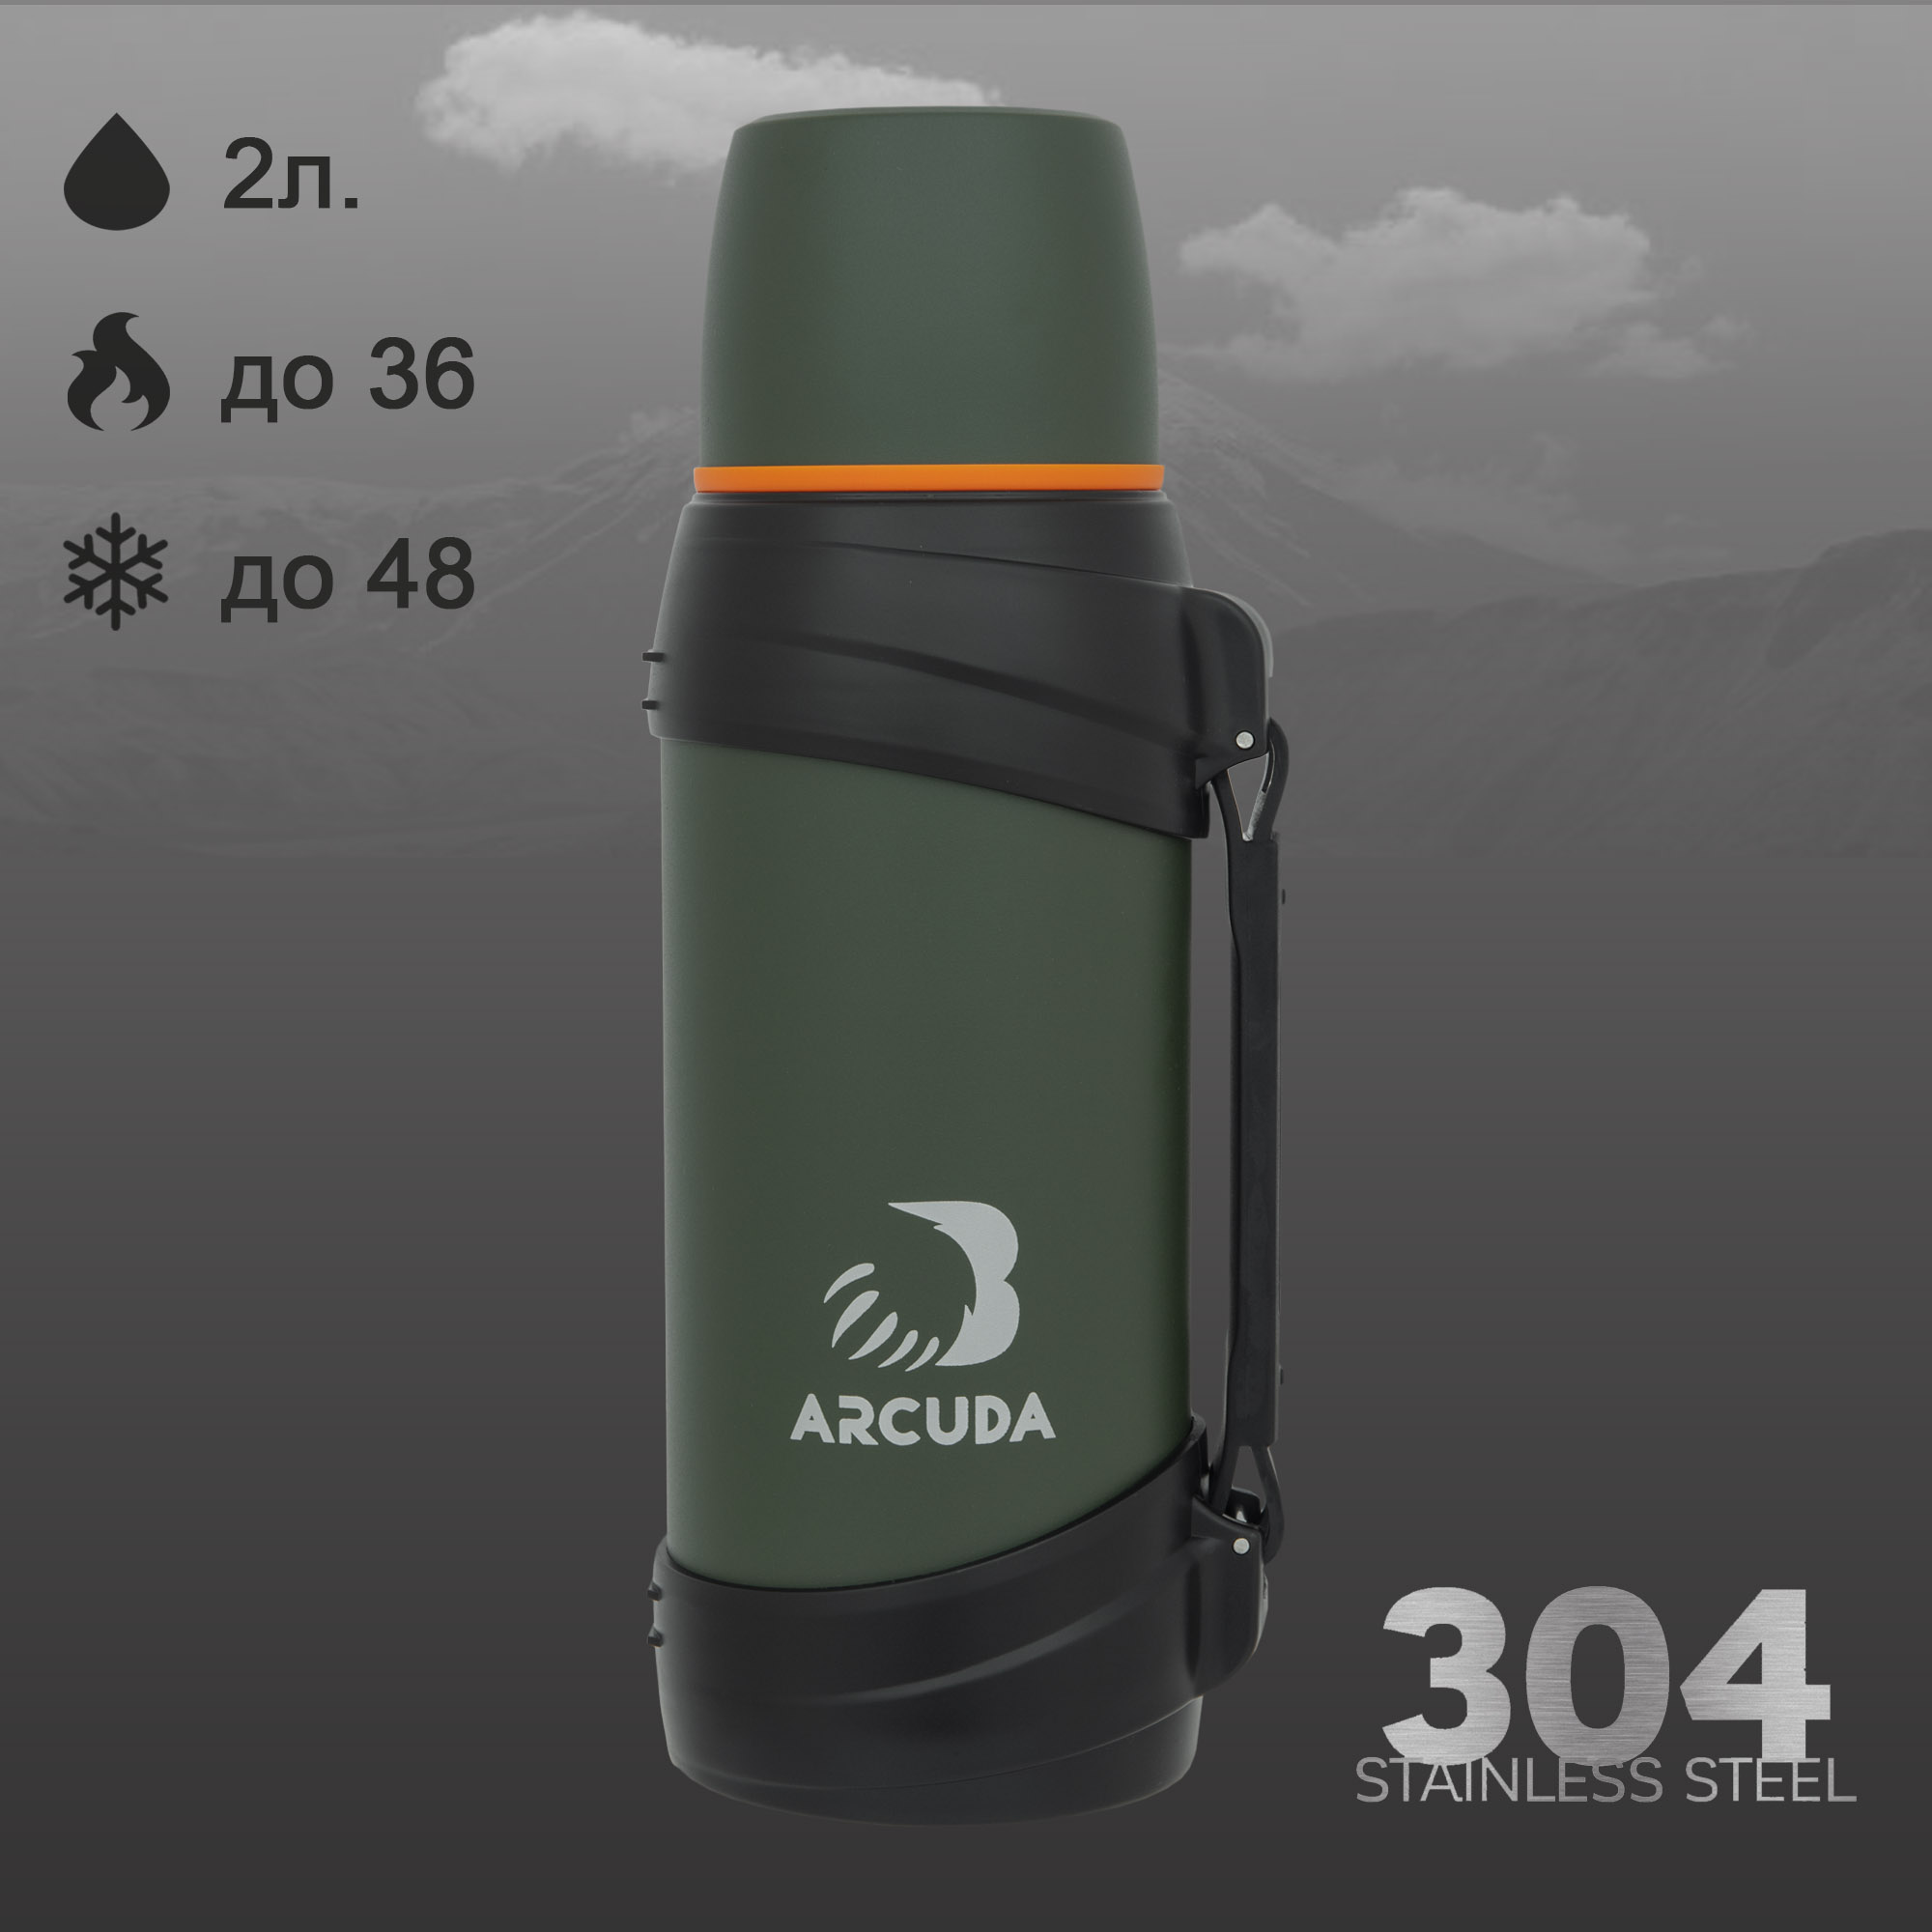 Термос вакуумный ARCUDA ARC-938 Army seria, 2 литра, зеленый цвет